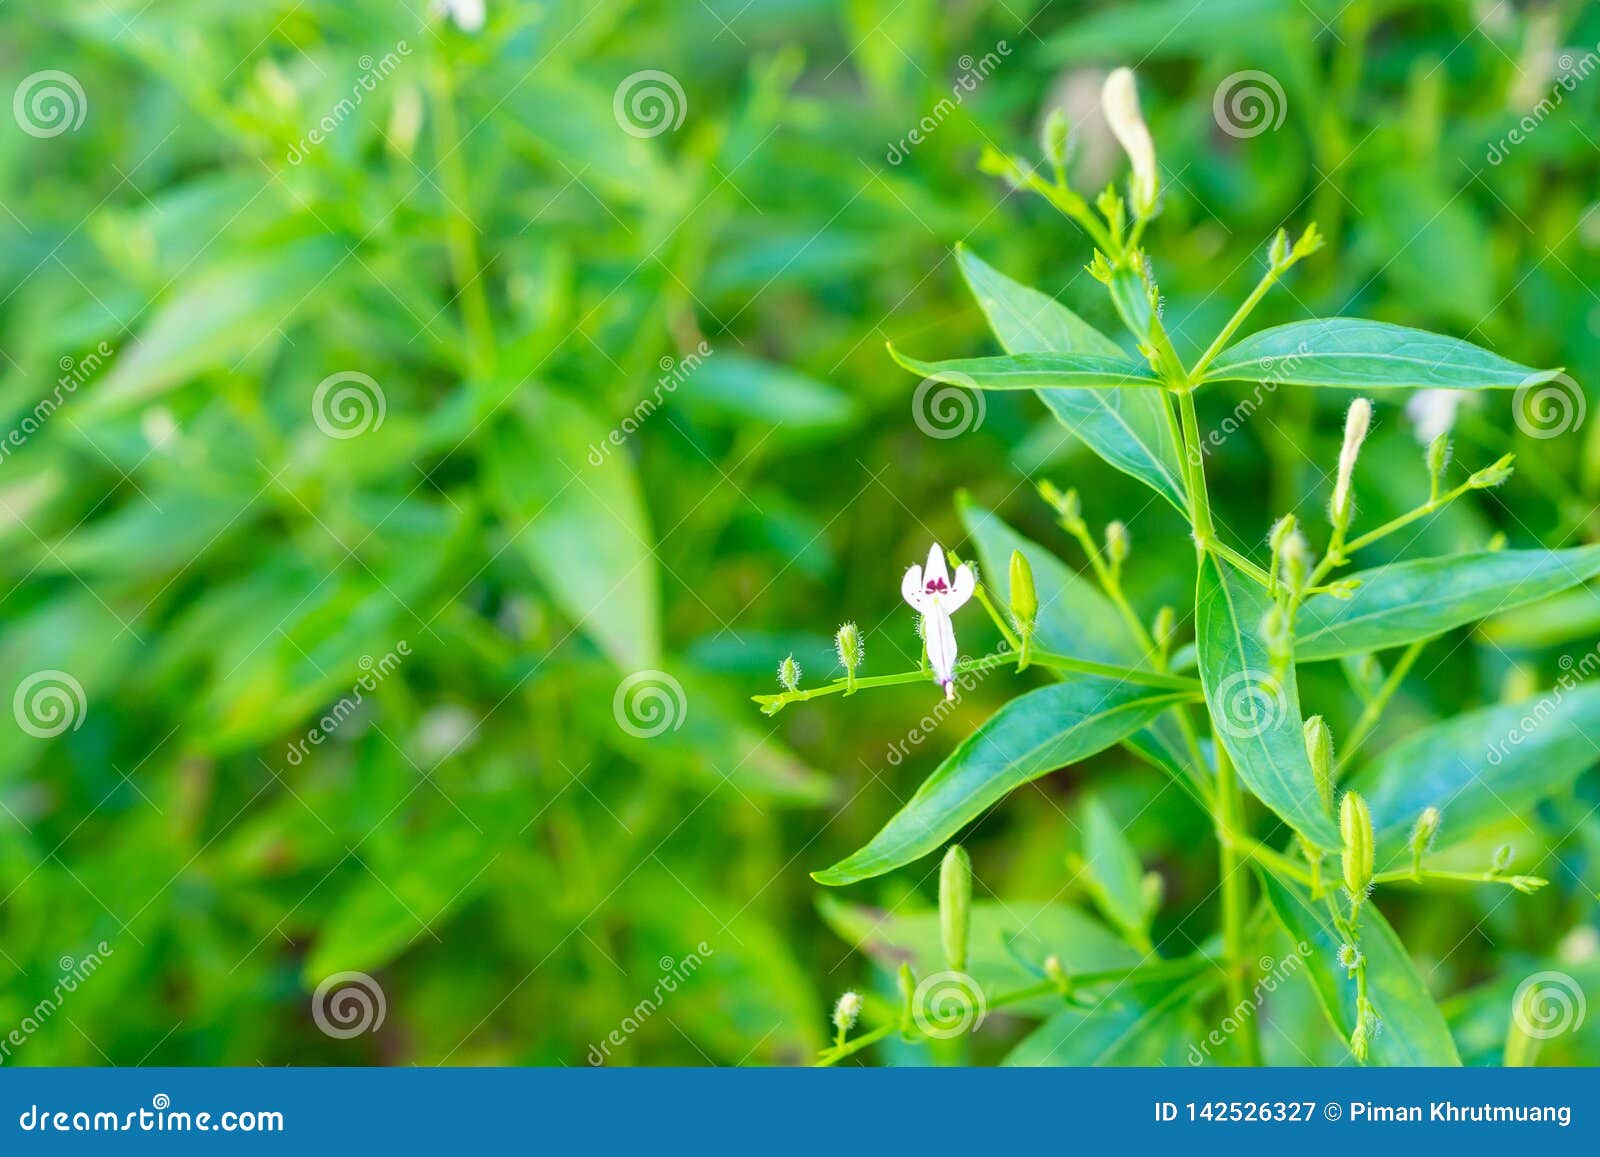 Andrographis paniculata herba adalah